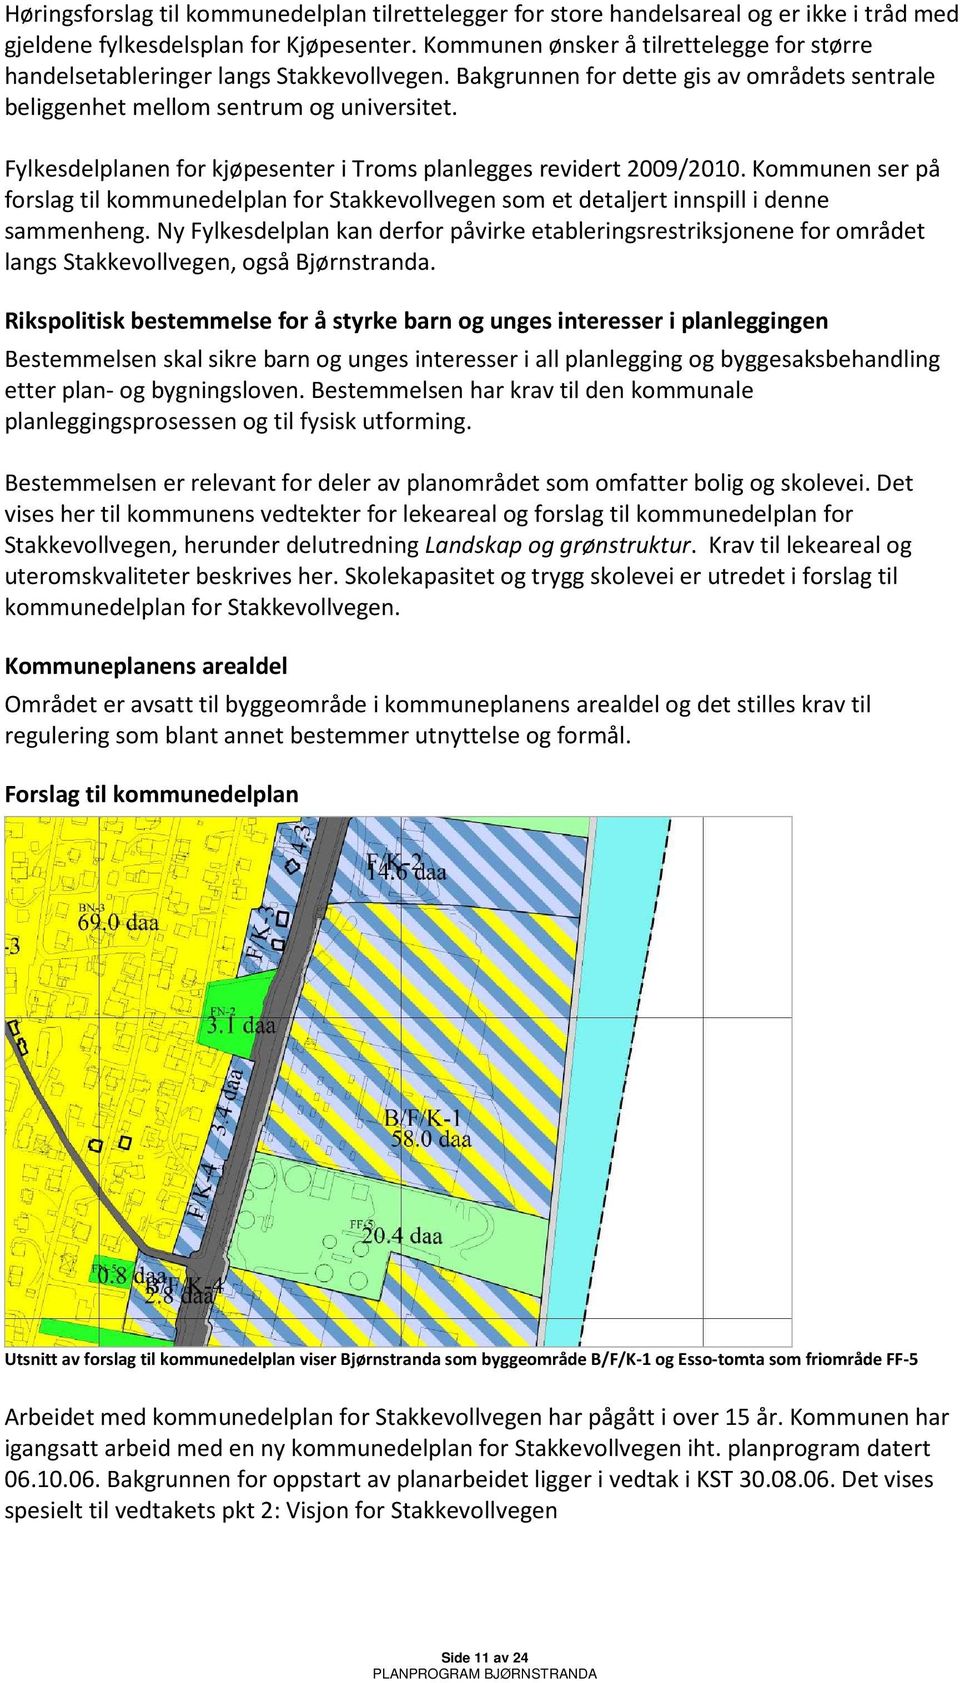 Fylkesdelplanen for kjøpesenter i Troms planlegges revidert 2009/2010. Kommunen ser på forslag til kommunedelplan for Stakkevollvegen som et detaljert innspill i denne sammenheng.